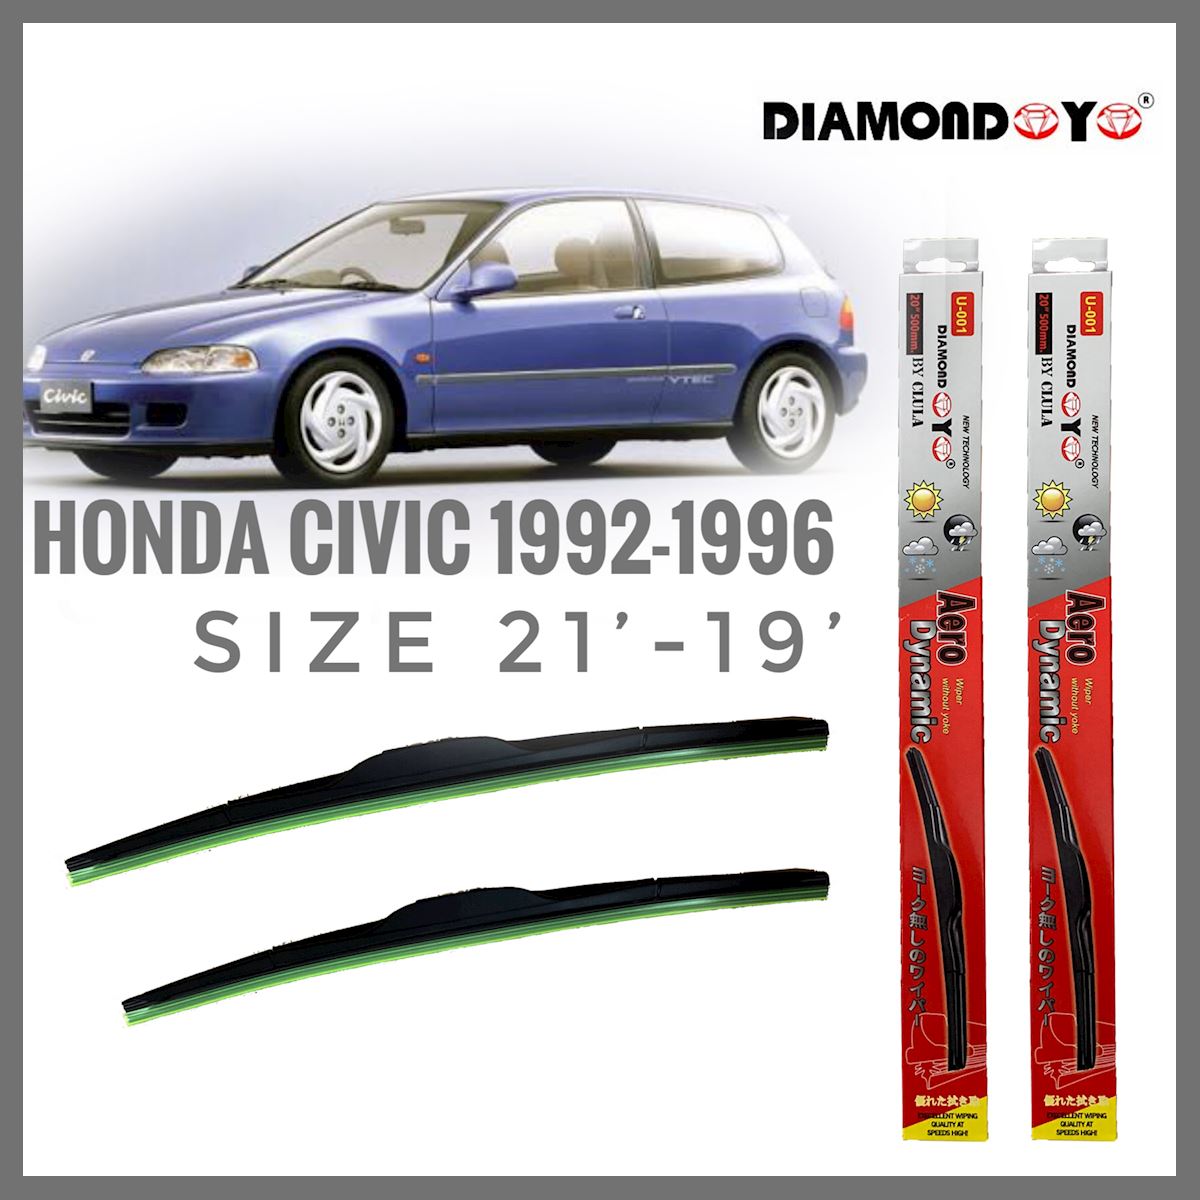 อุปกรณ์ยางรีดน้ำน้ำฝน ใบปัดน้ำฝน ซิลิโคน ตรงรุ่น Honda Civic 1992-1996 EG ไซส์ 21-19 ยี่ห้อ Diamondคุณภาพดี **ครบเครื่องเรืองประดับ**